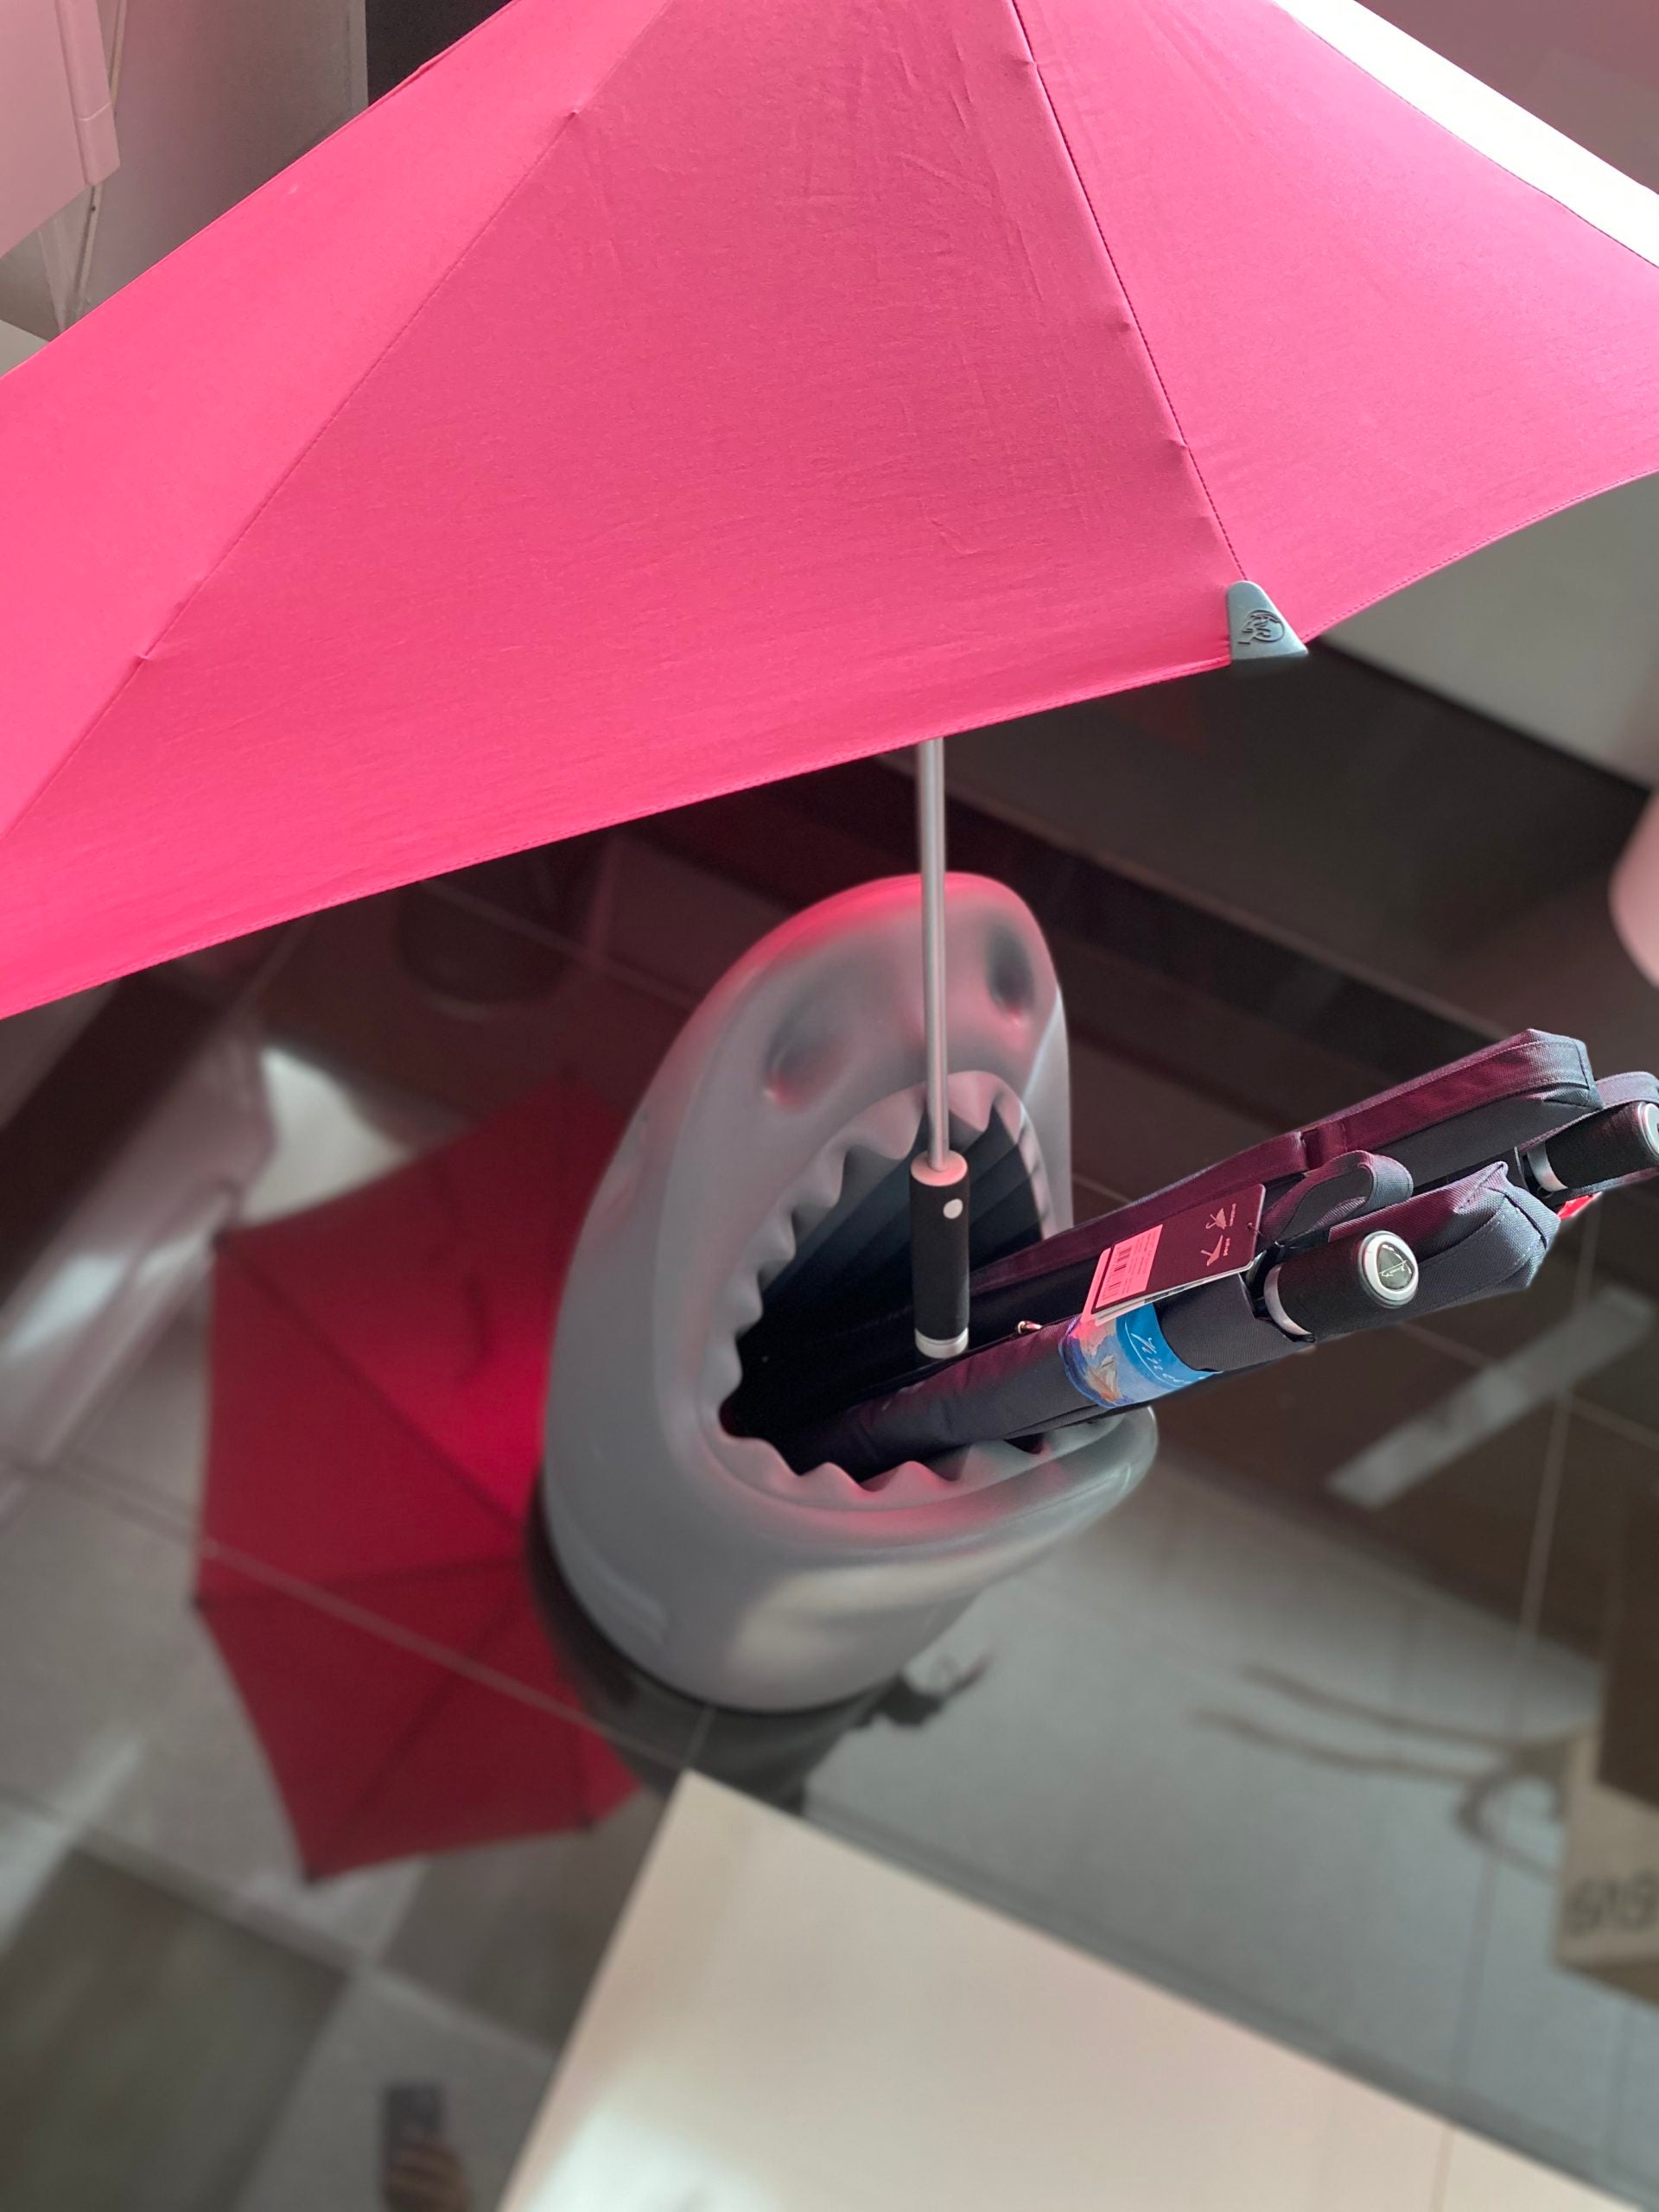 Qeeboo Killer Umbrella Stand Studio Job